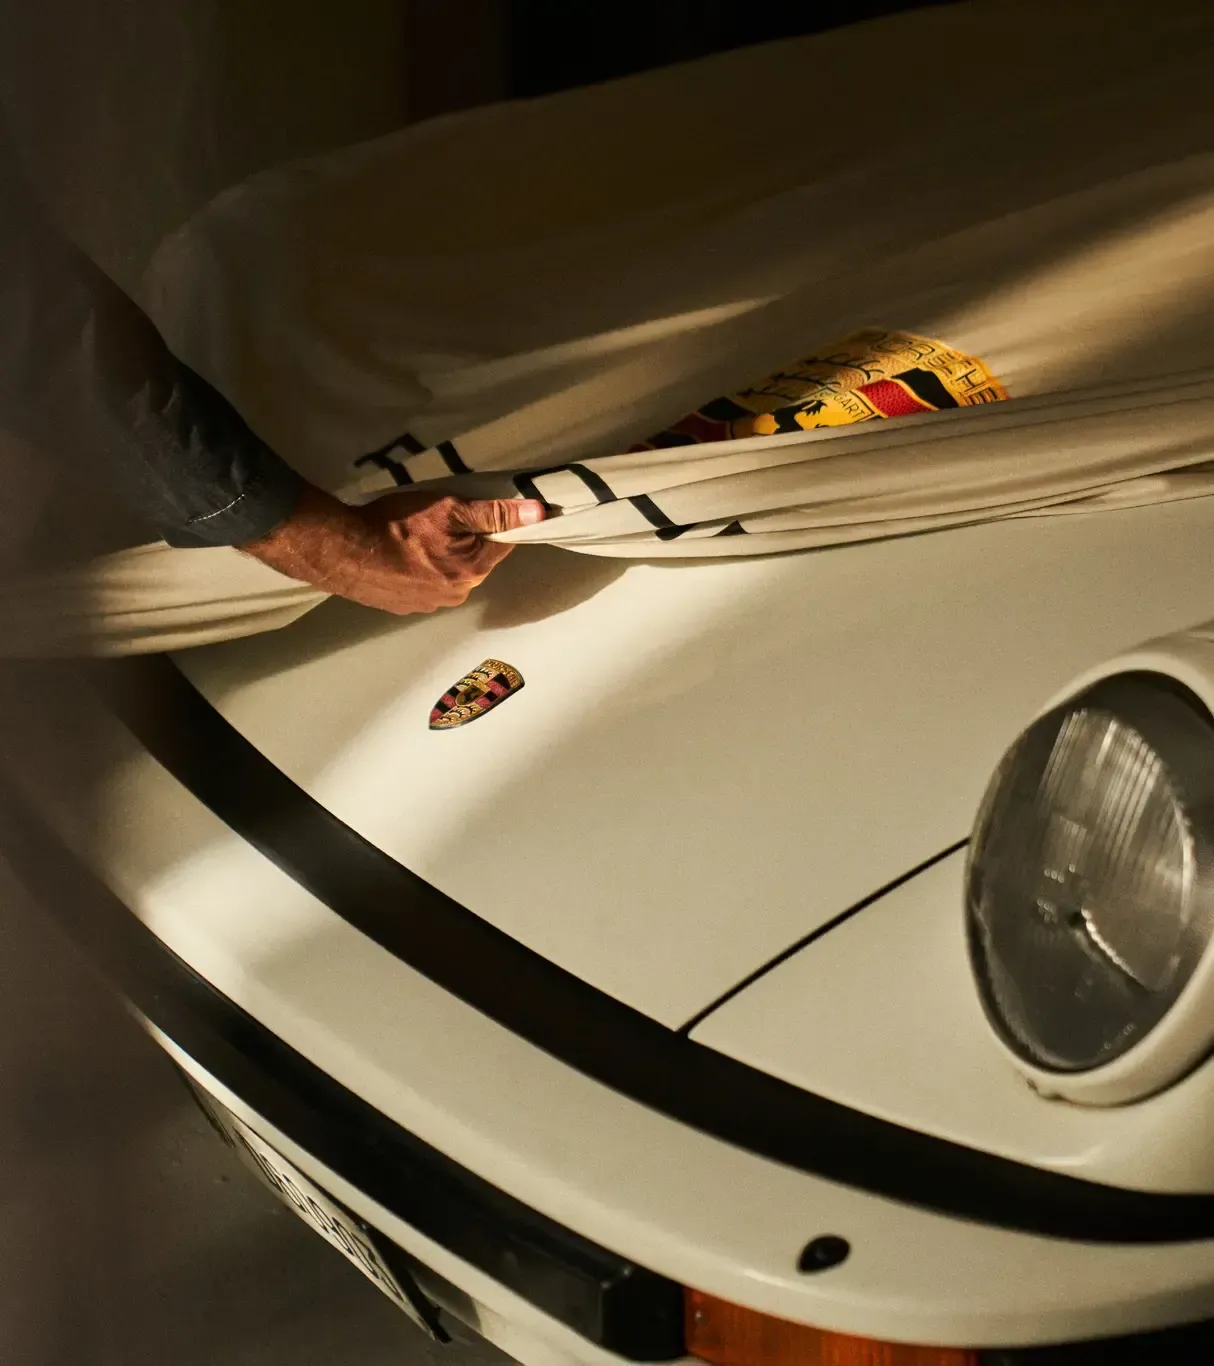 Housse de luxe de protection pour I'extérieur pour Porsche 911 964